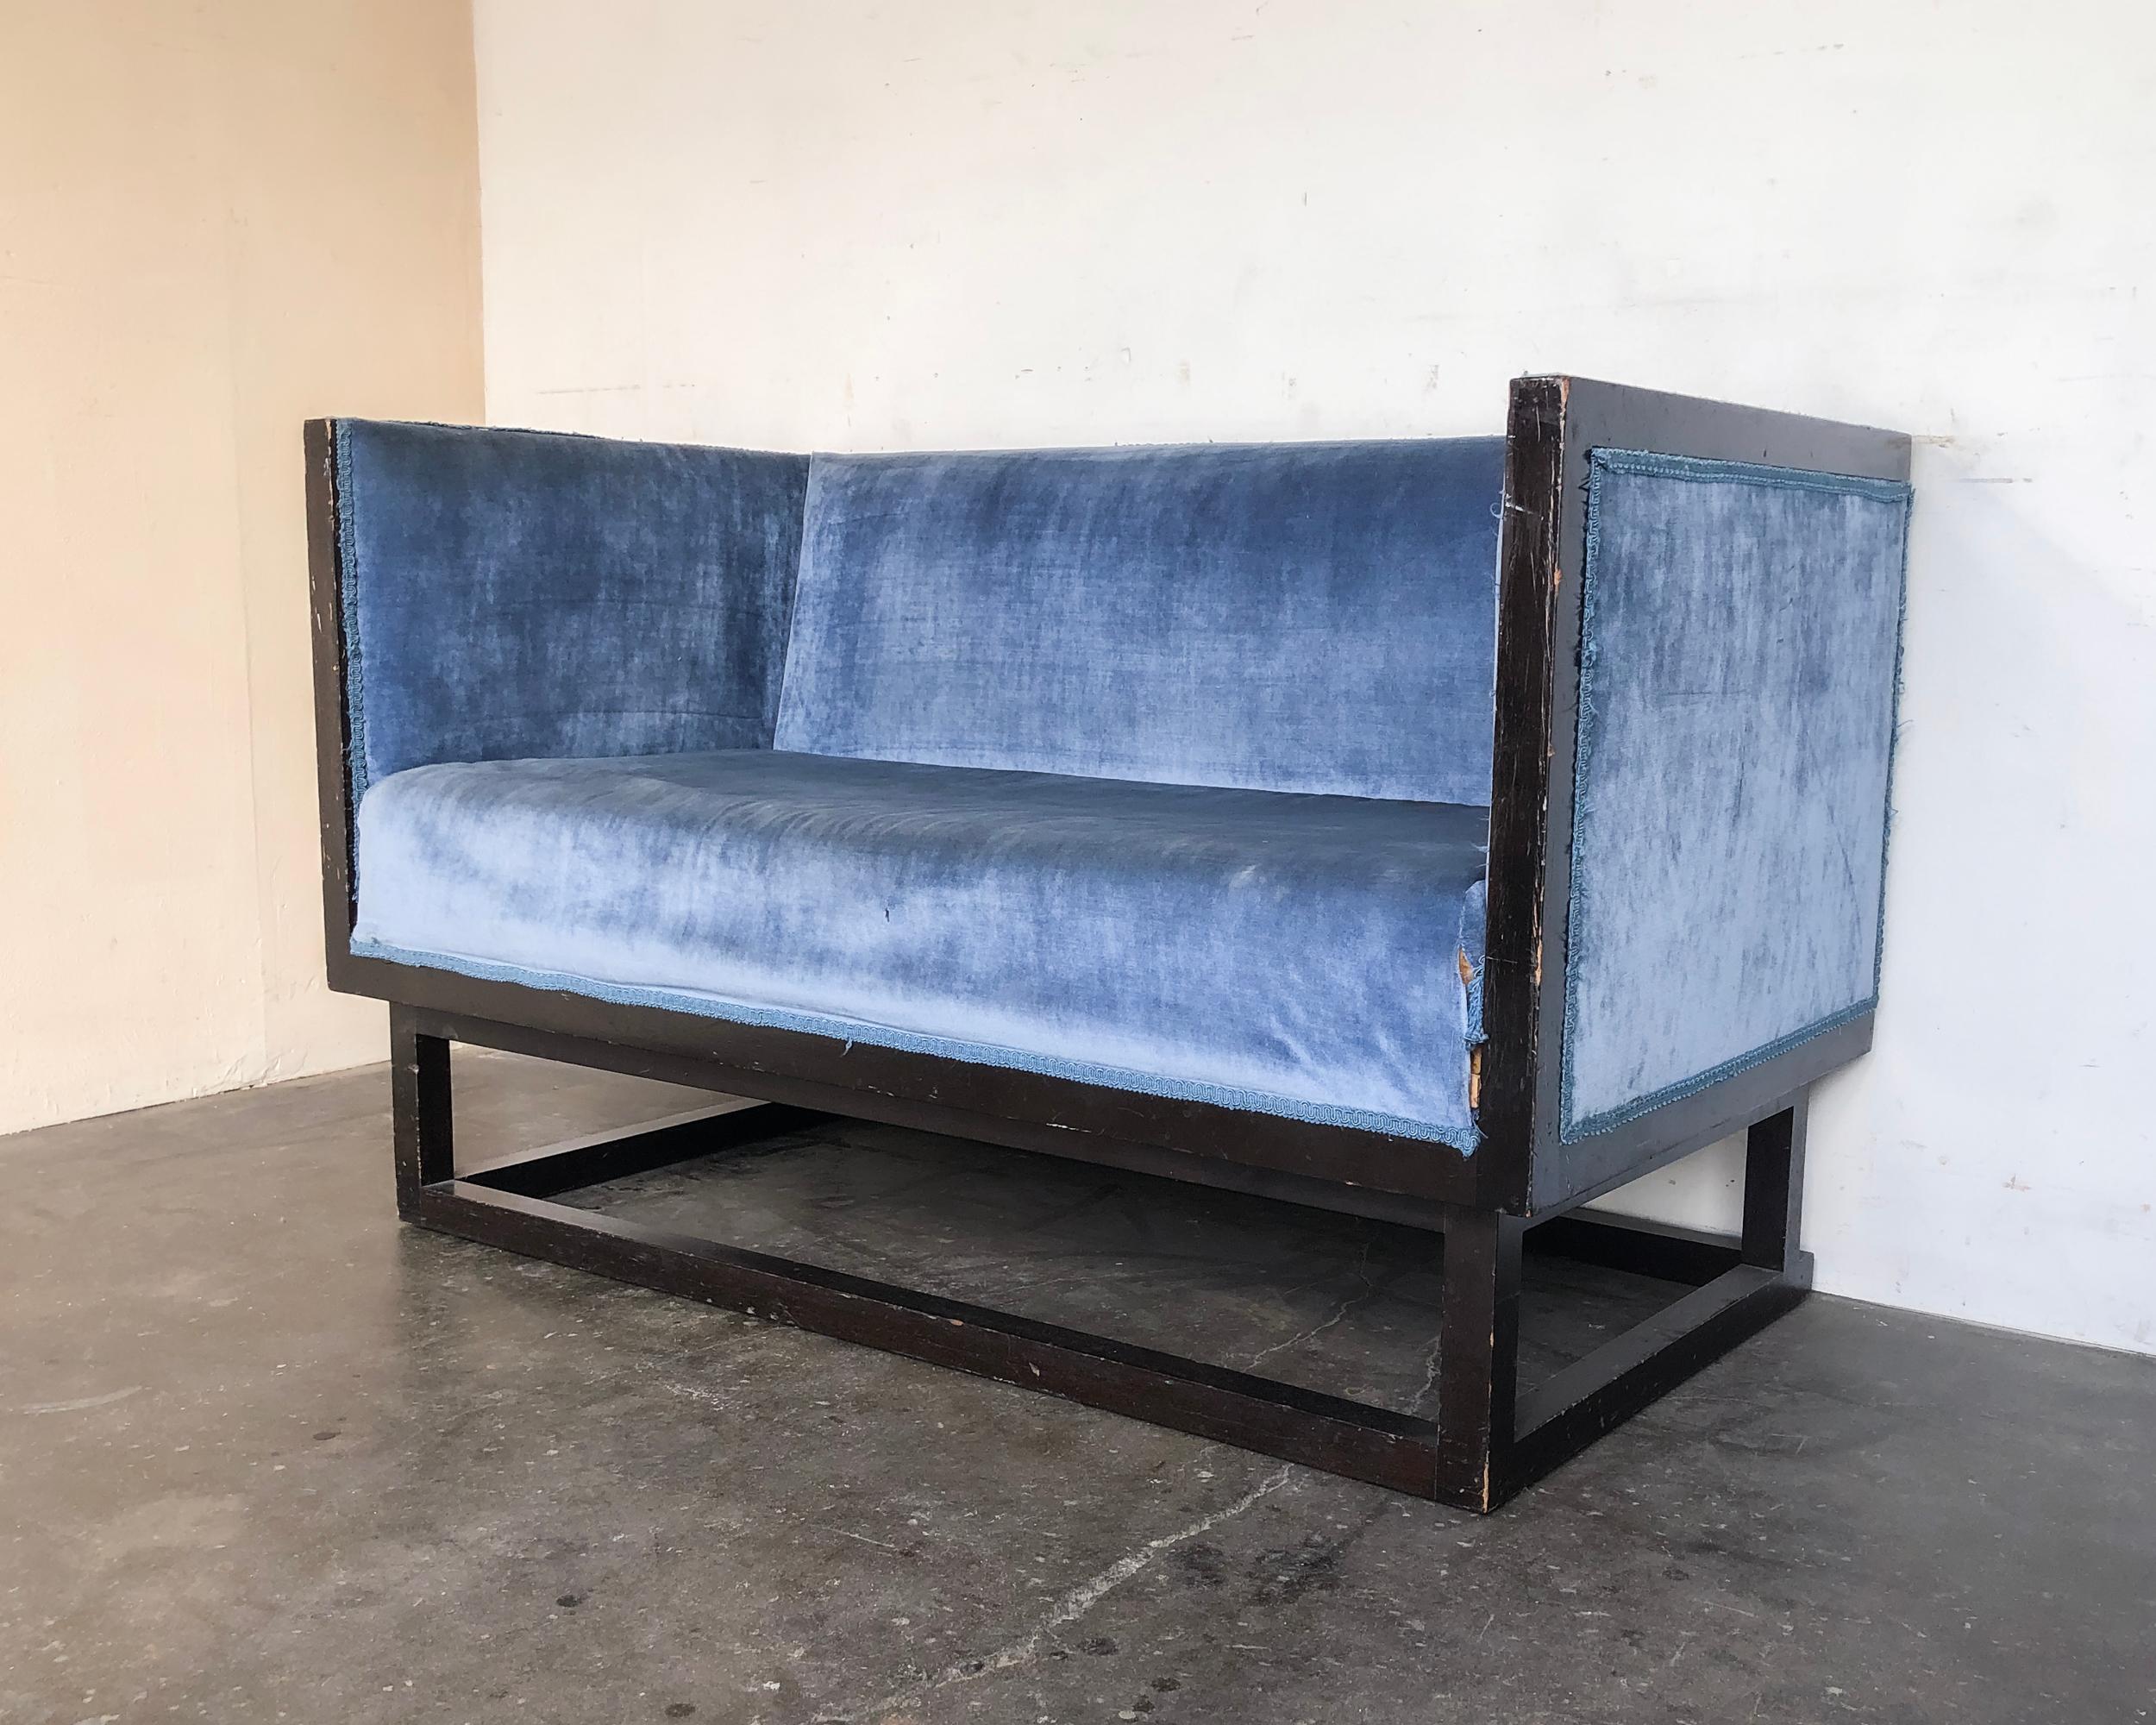 Seltenes originales 'Cabinet Sofa' von Josef Hoffmann, handgefertigt um 1980 von Wittmann Austria. Das 1903 für das Wiener Haus von Dr. Salzer entworfene Schrankset von Josef Hoffmann ist ein zeitloses Design. Die rationalistische Würfelform wird